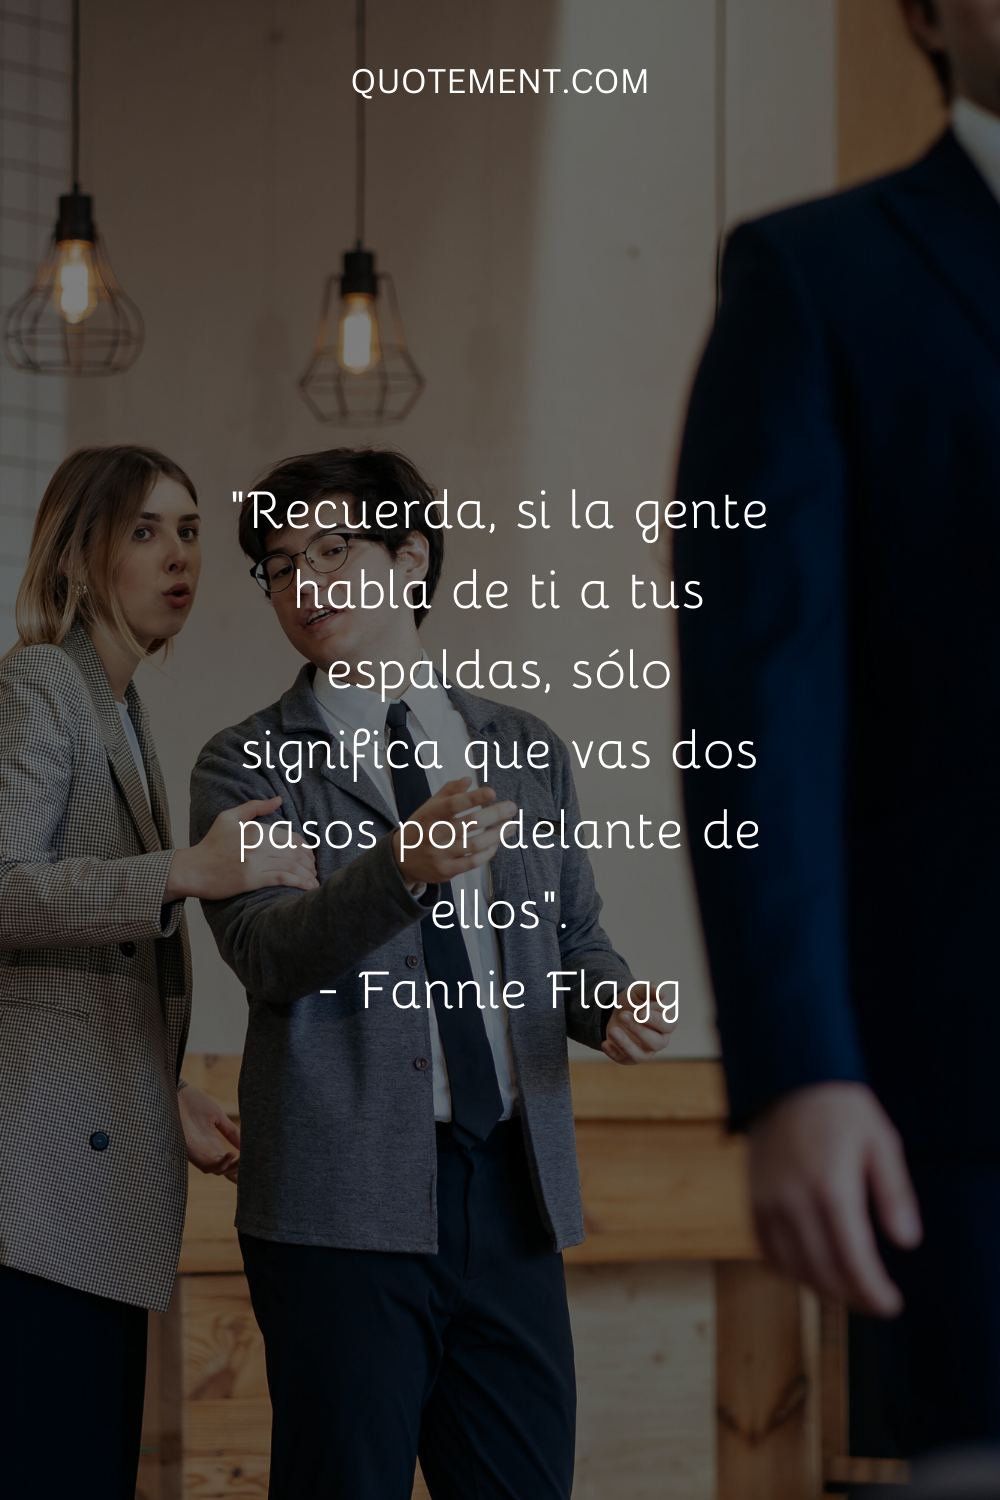 "Recuerda, si la gente habla de ti a tus espaldas, sólo significa que vas dos pasos por delante de ellos". - Fannie Flagg